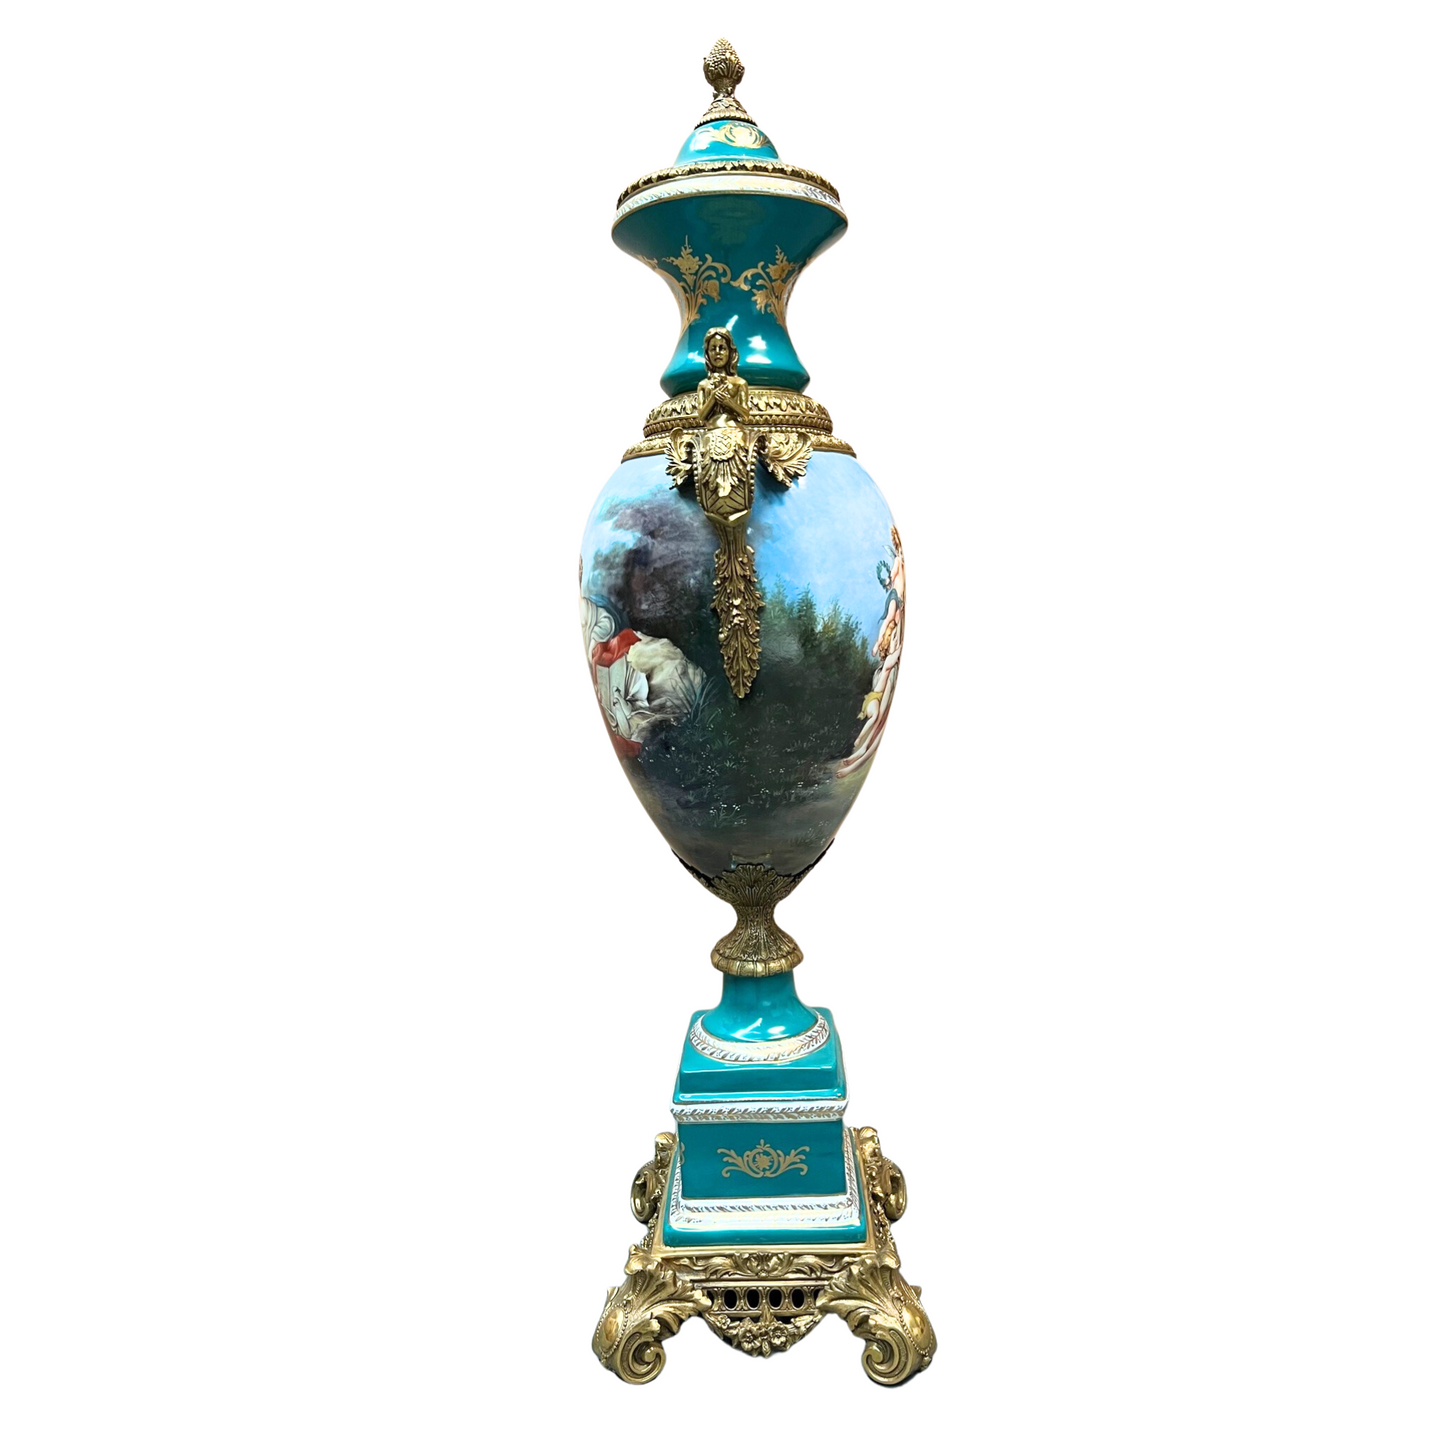 Large Mythological Rococo Style Porcelain Urn